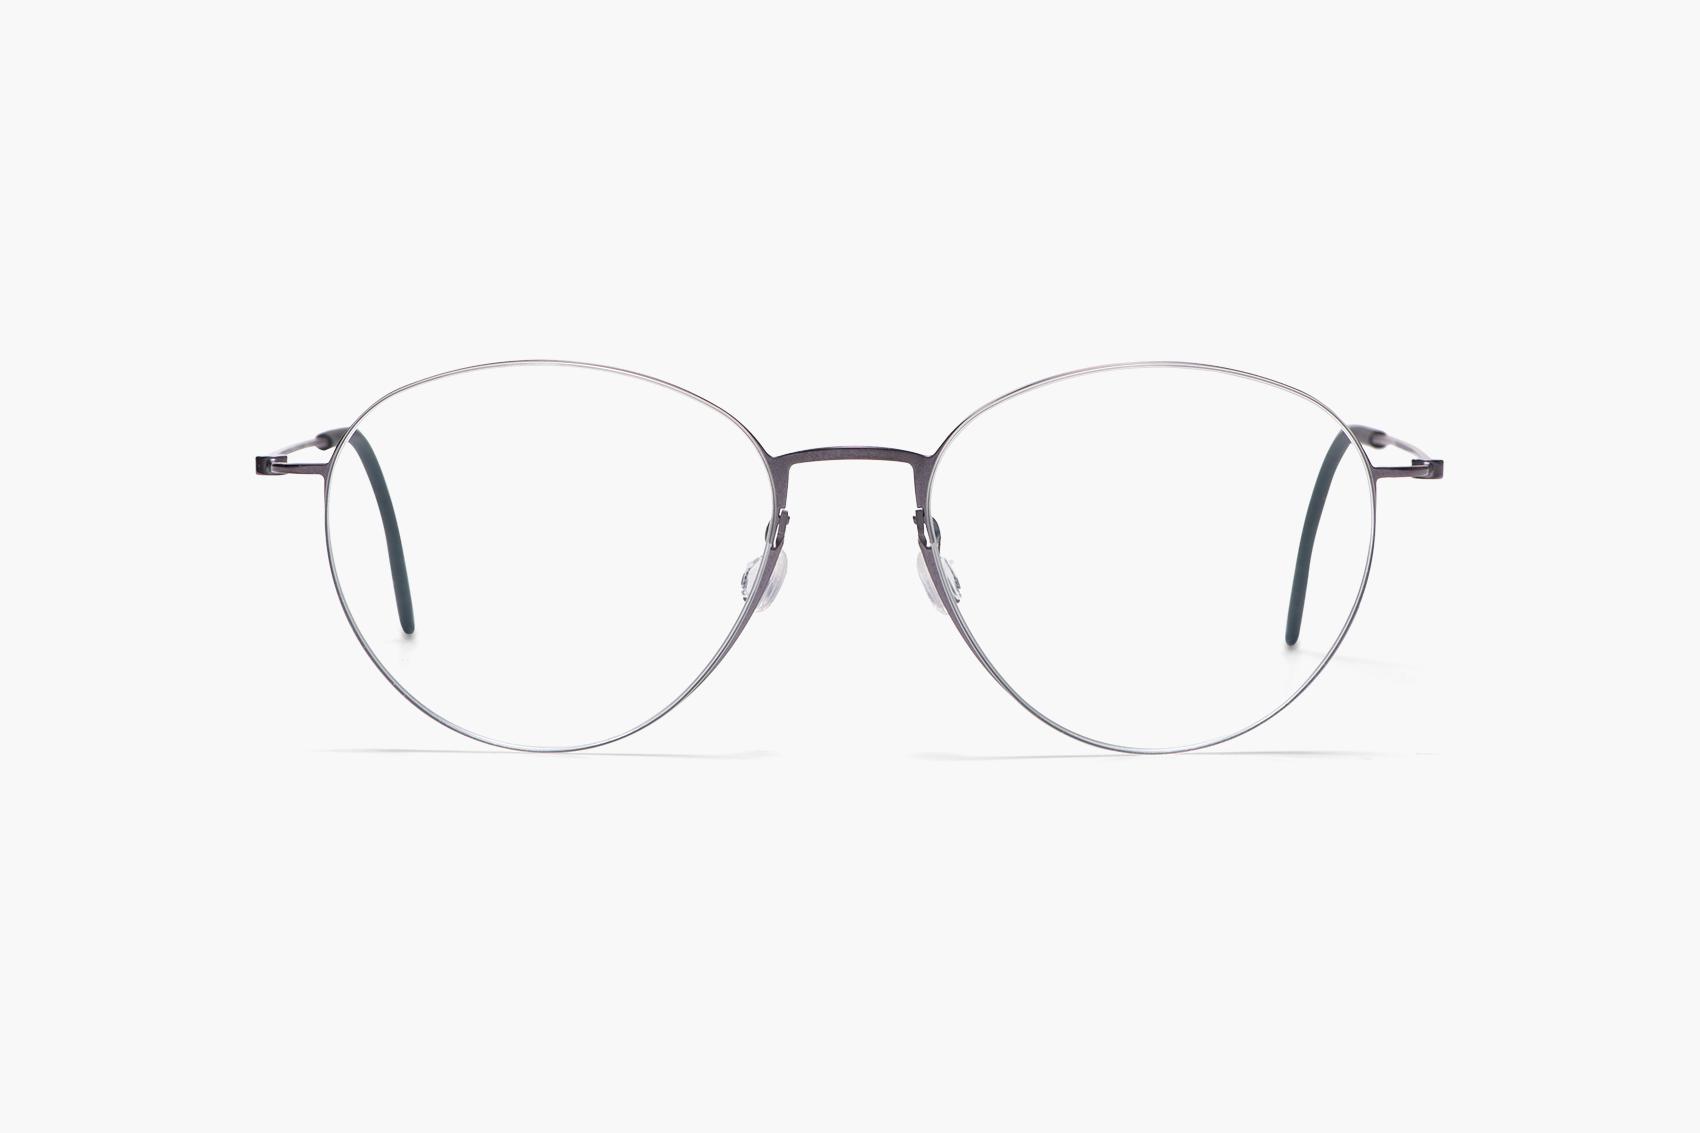 Bliv klar røgelse tynd 5531 by LINDBERG | Try on glasses online & find optician | FAVR